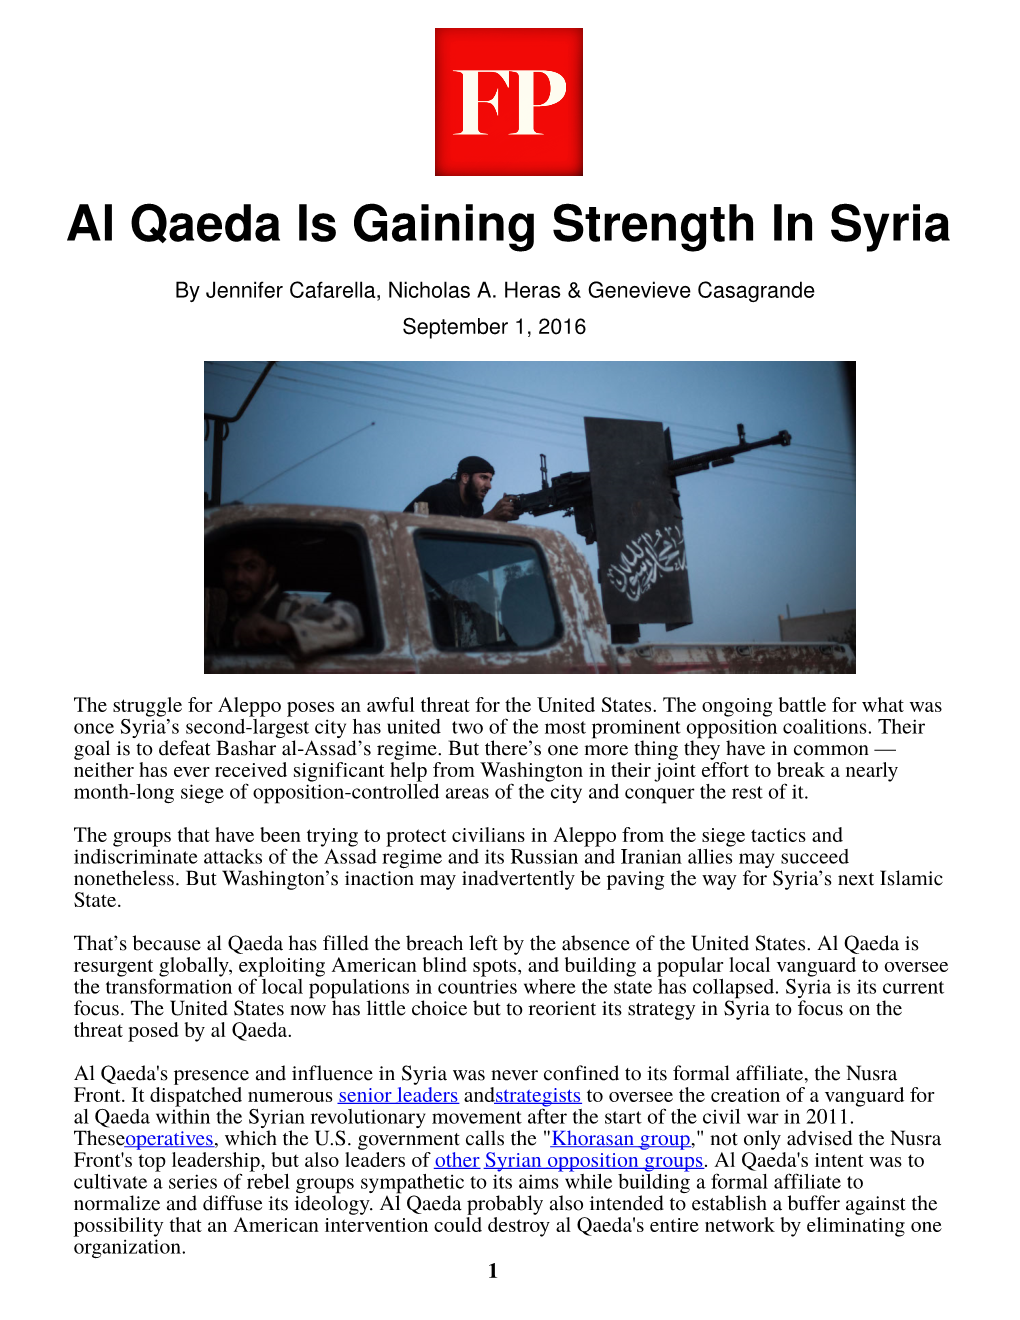 Al Qaeda Is Gaining Strength in Syria